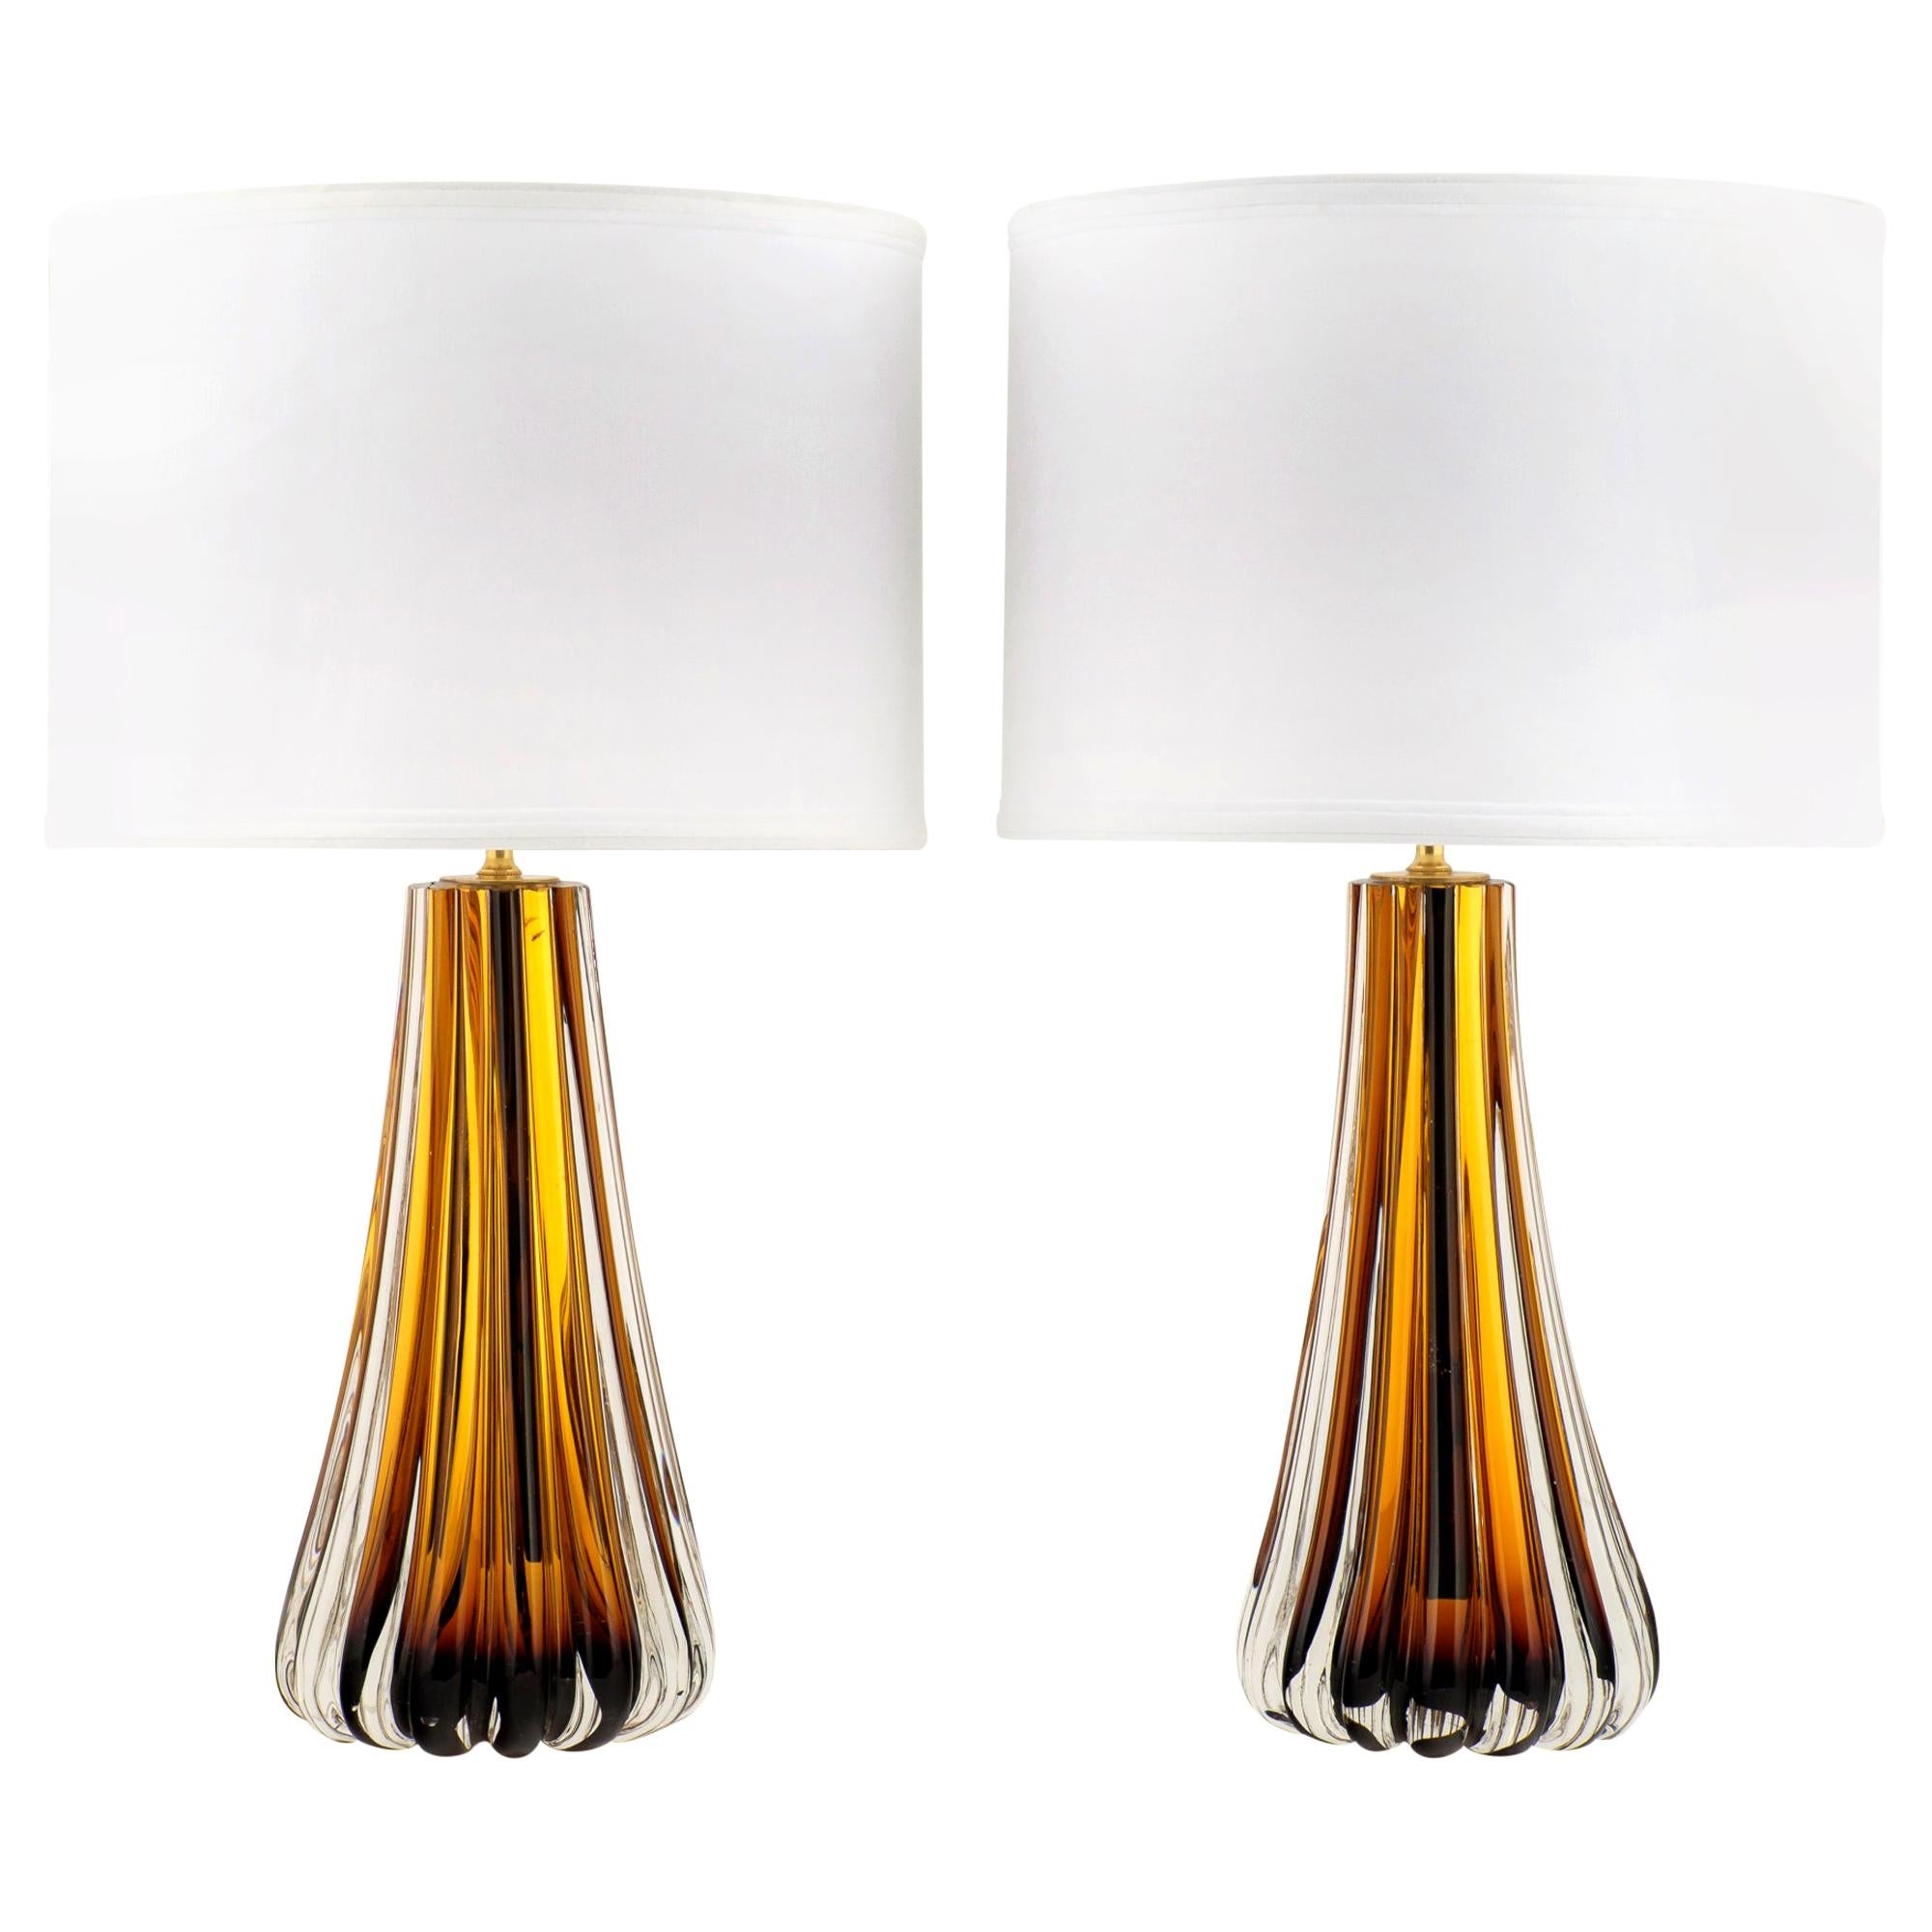 Murano Amber Glass Pair of Lamps